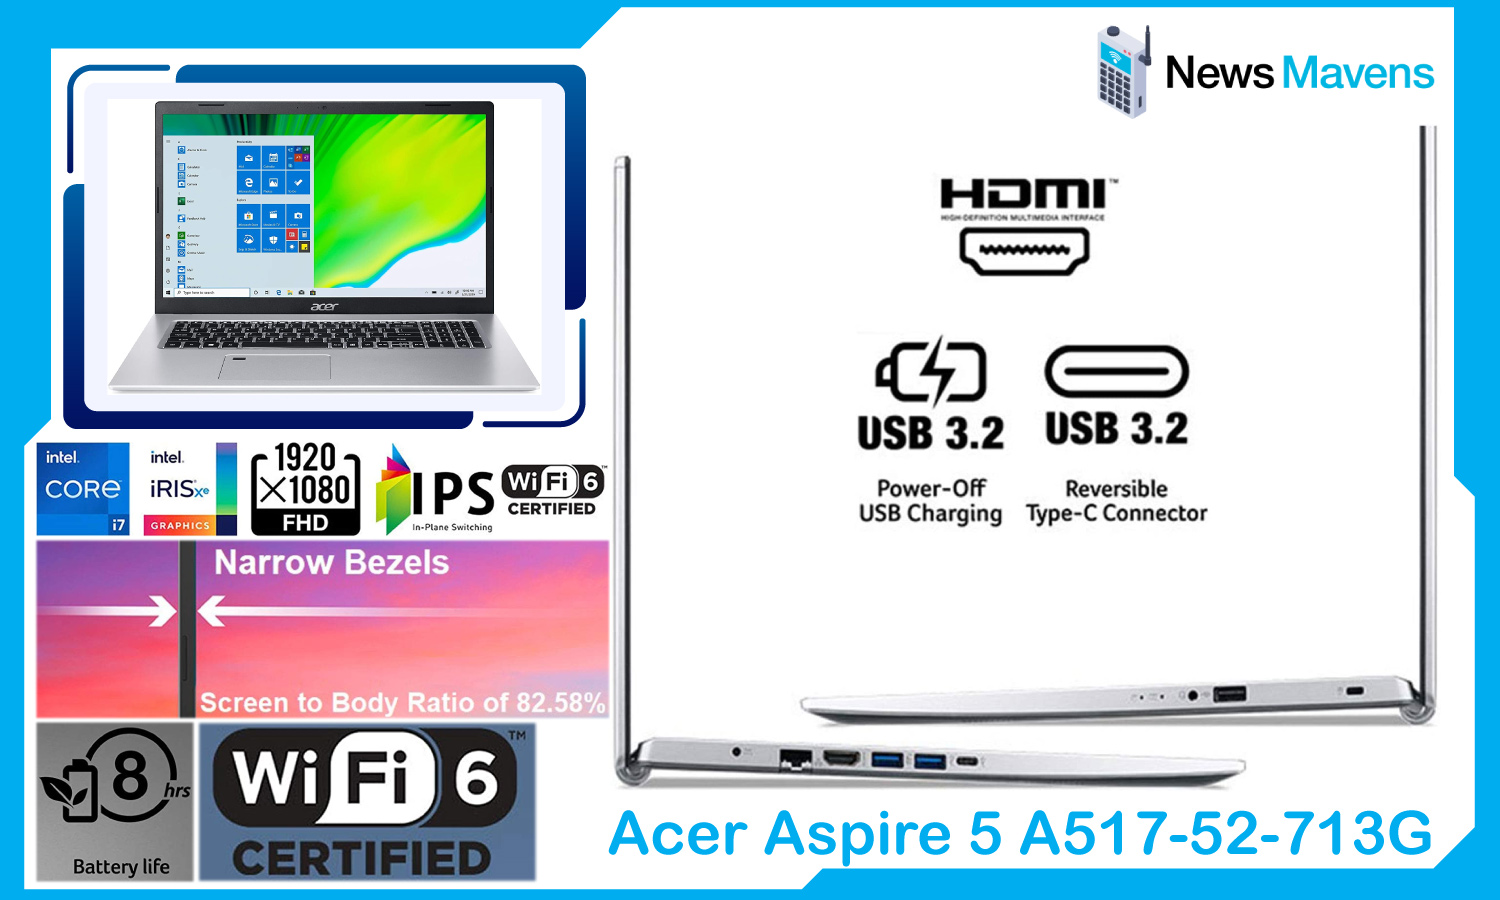 Acer Aspire 5 A517-52-713G